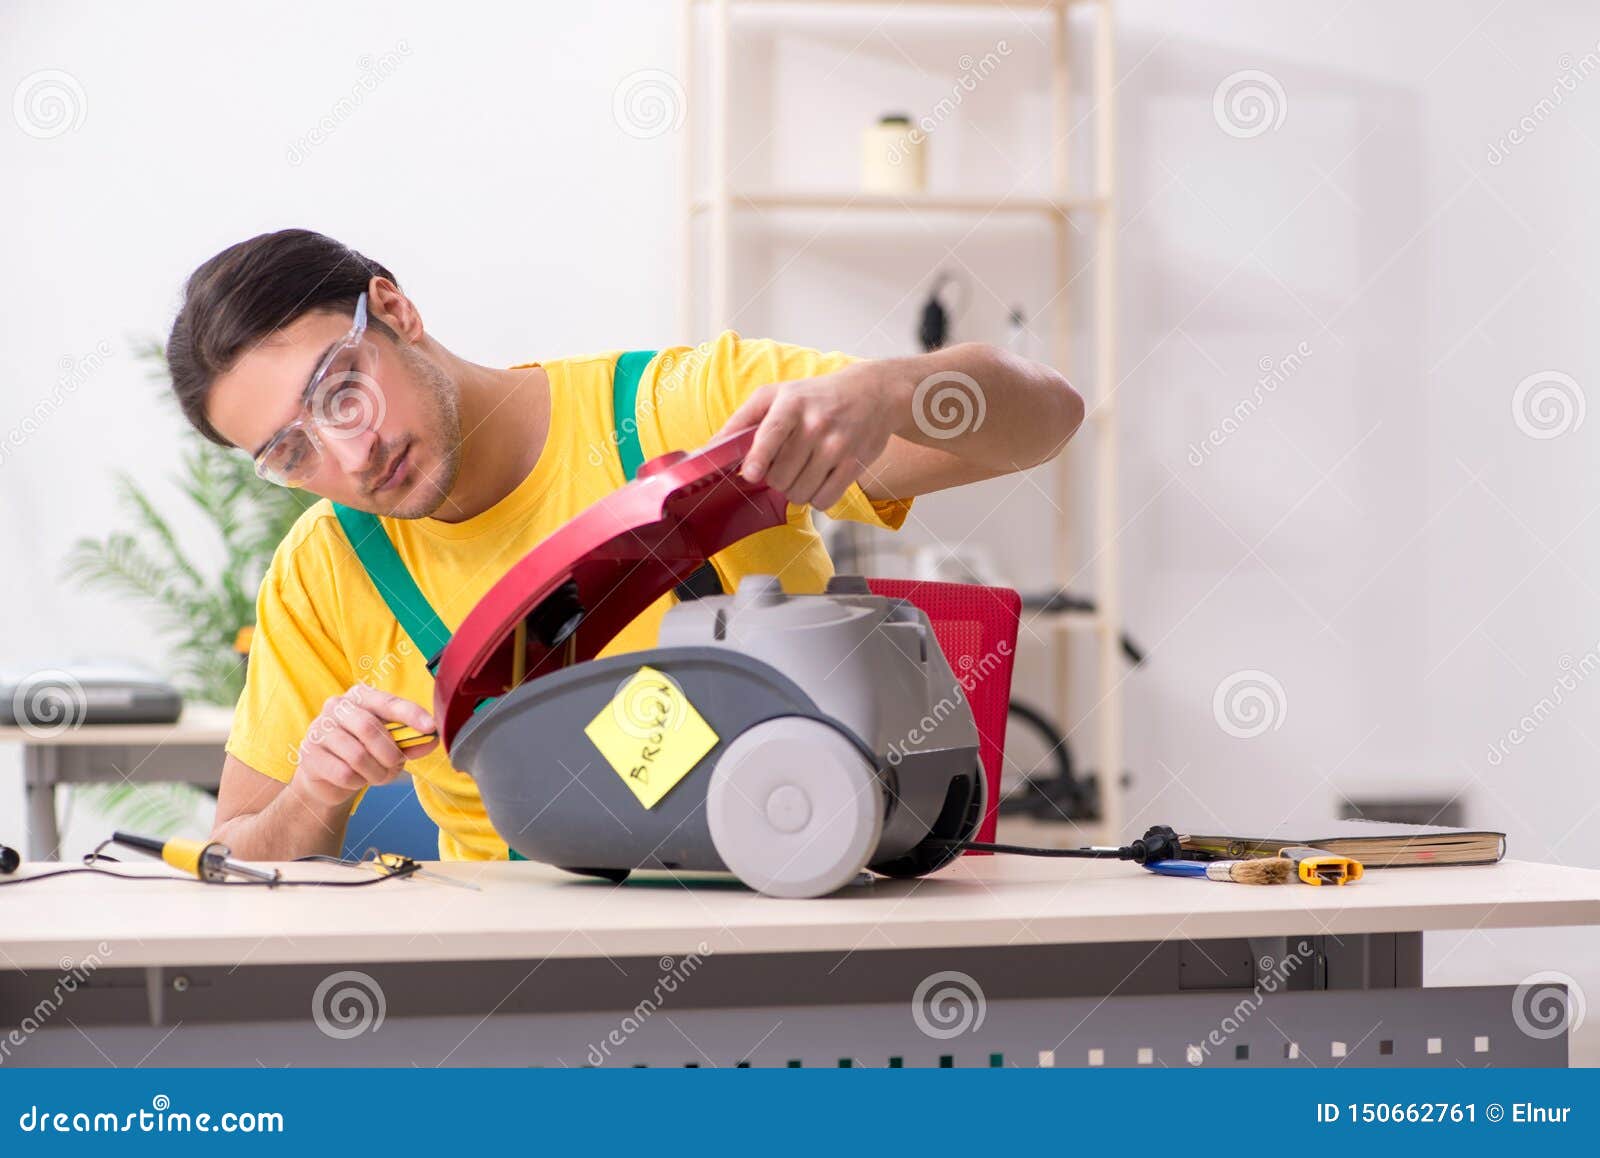 The Man Repairman Repairing Vacuum Cleaner Stock Image